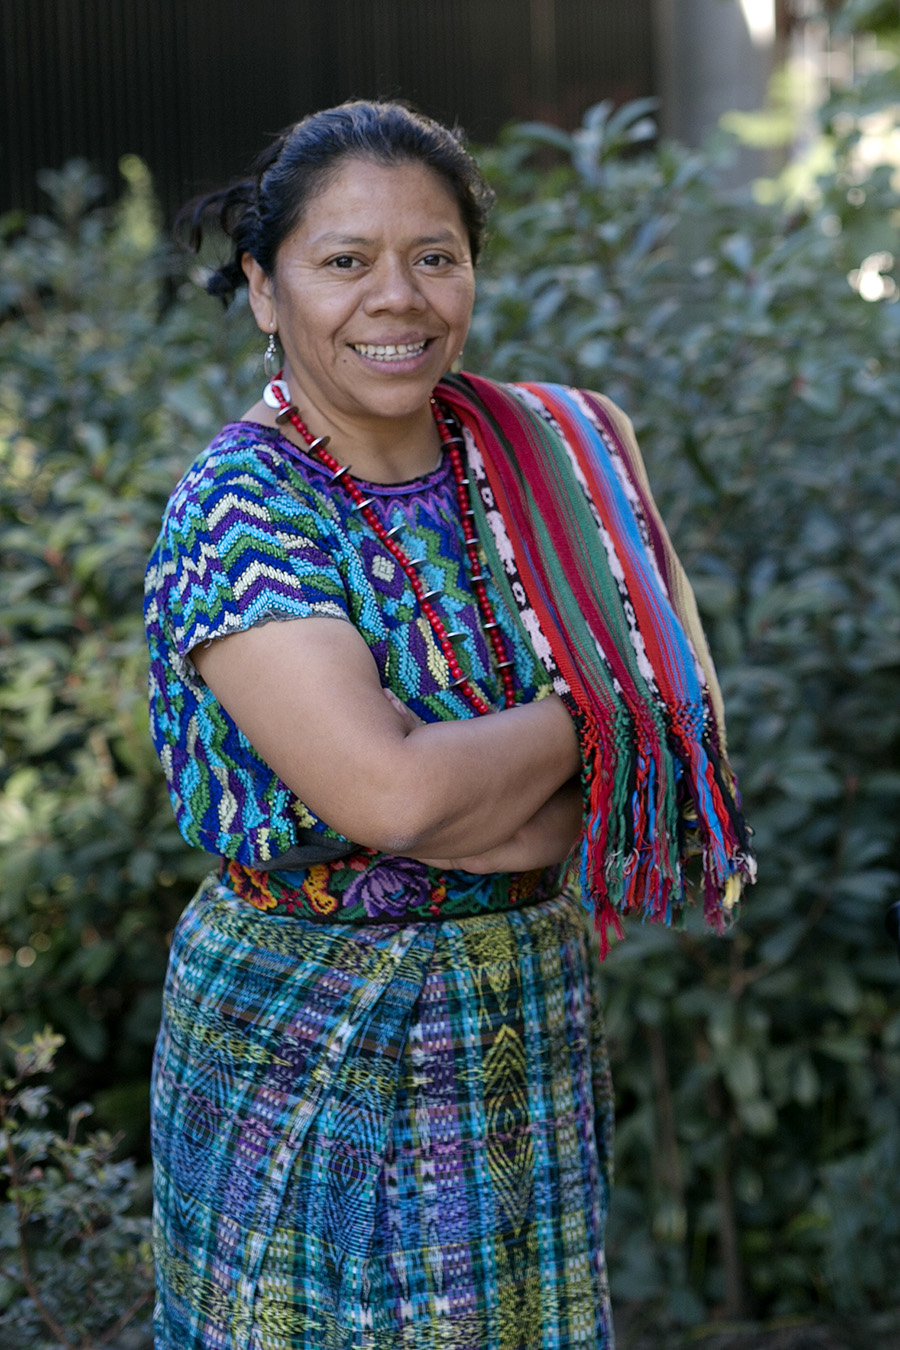 Lolita Chávez